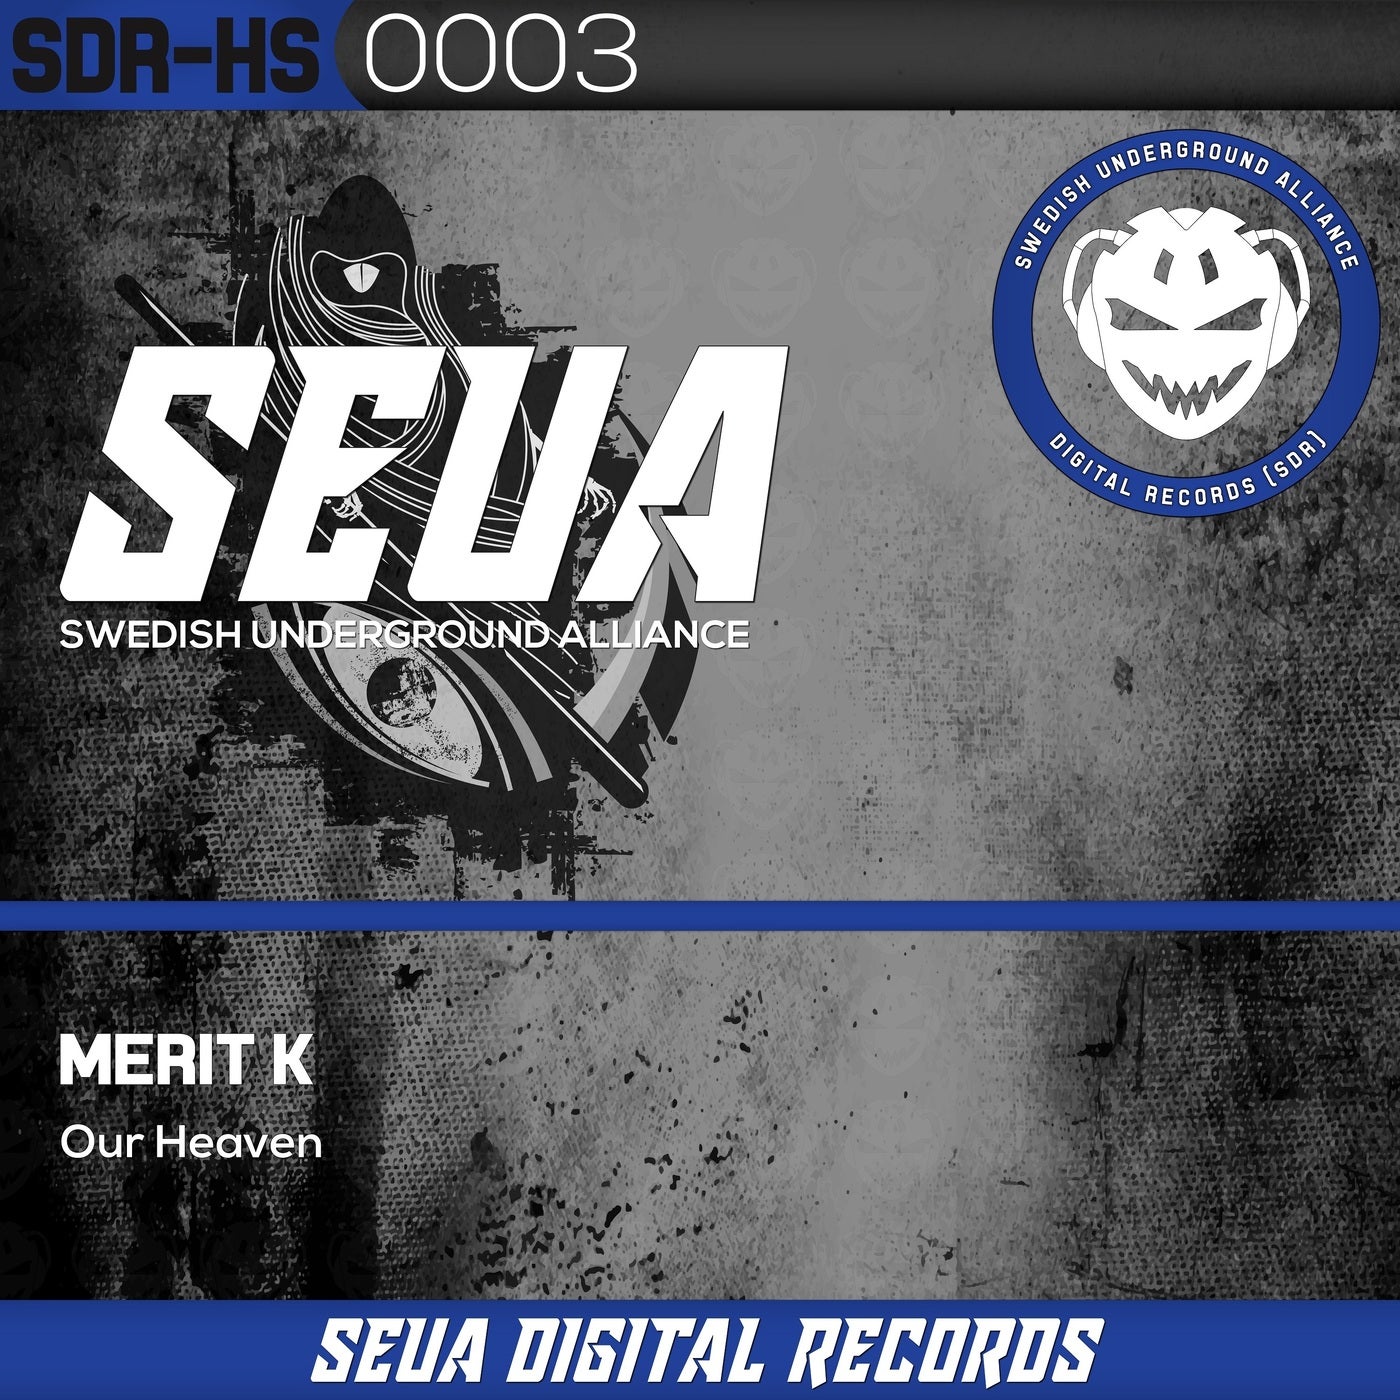 Merit K - Our Heaven [SEUA Digital Records]